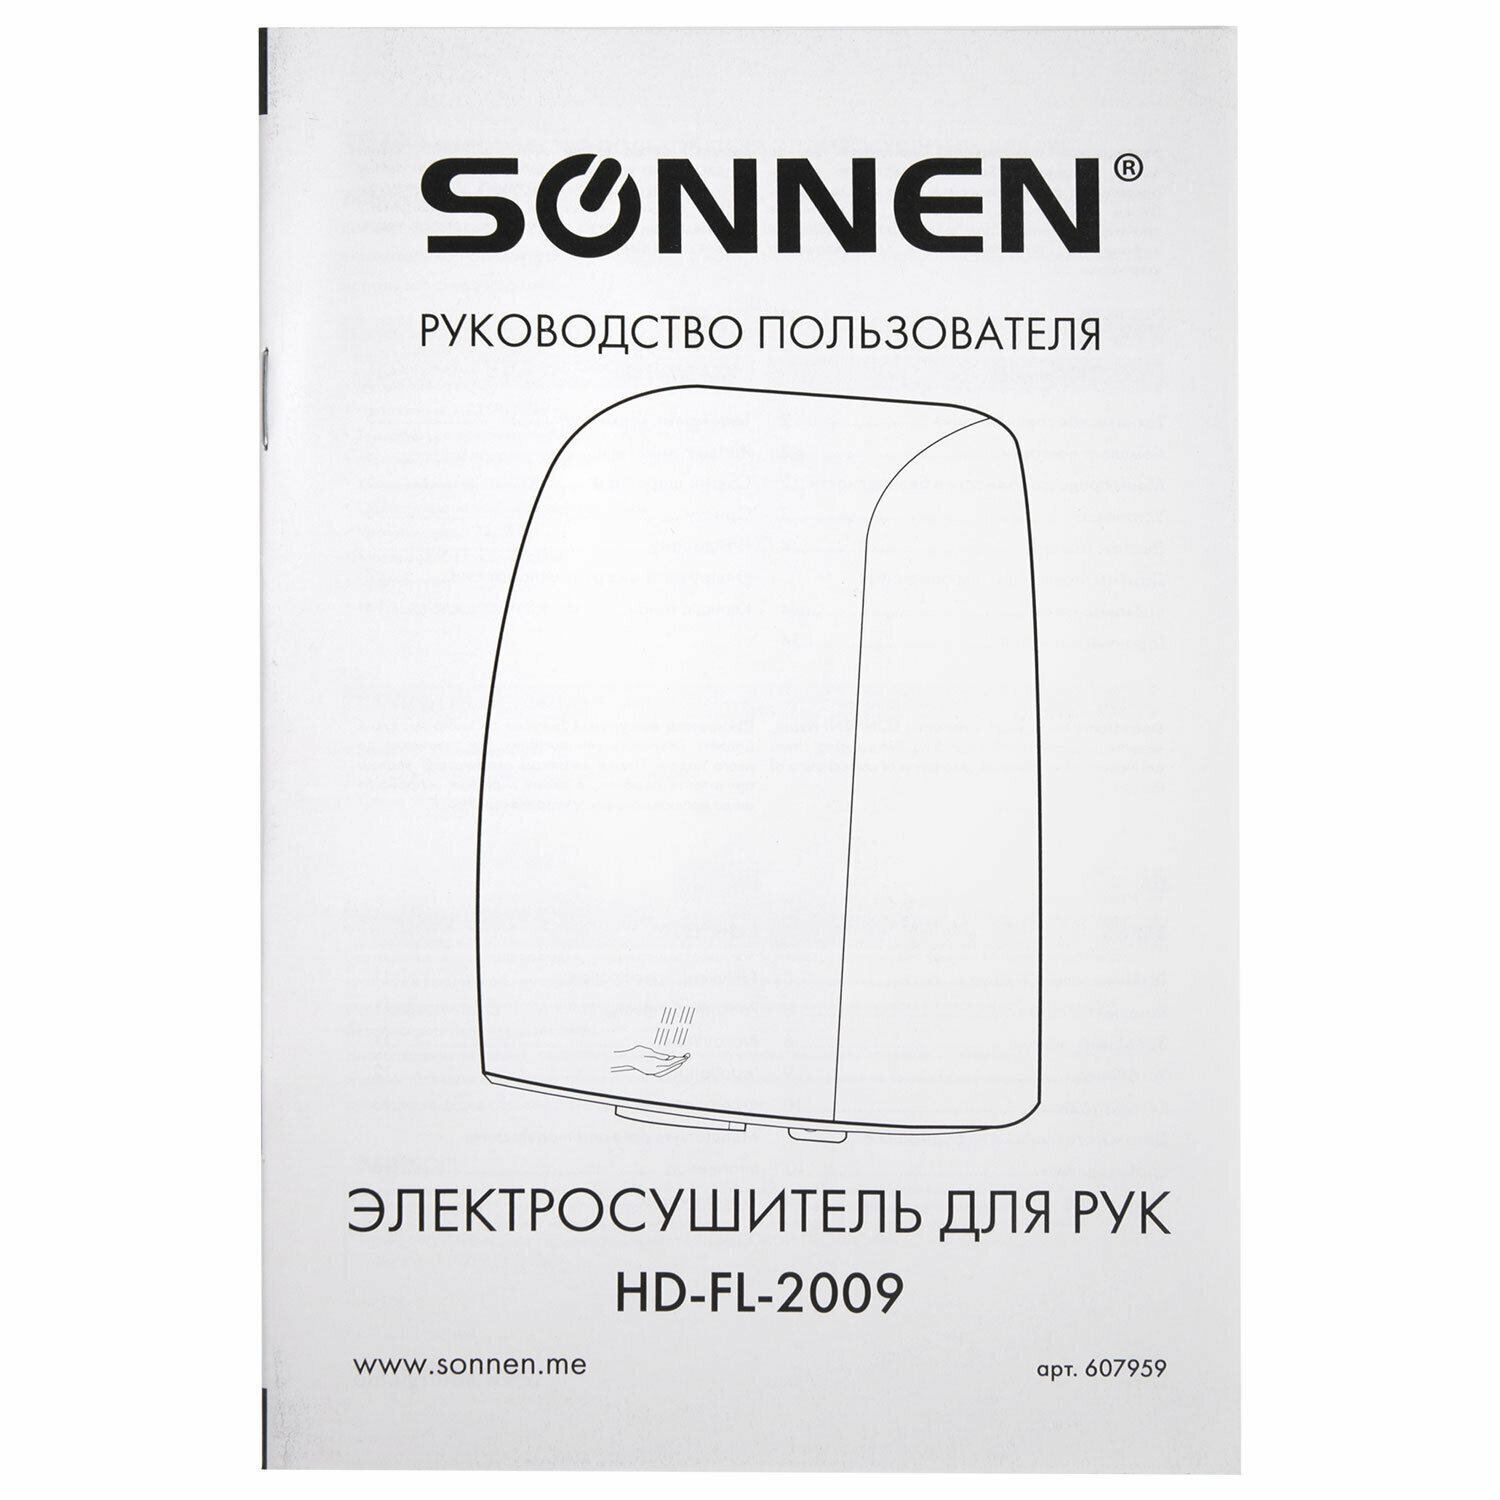 Сушилка высокоскоростная для рук SONNEN HD-FL-2009, 1200 Вт, пластиковый корпус, белая, 607959 - фотография № 6